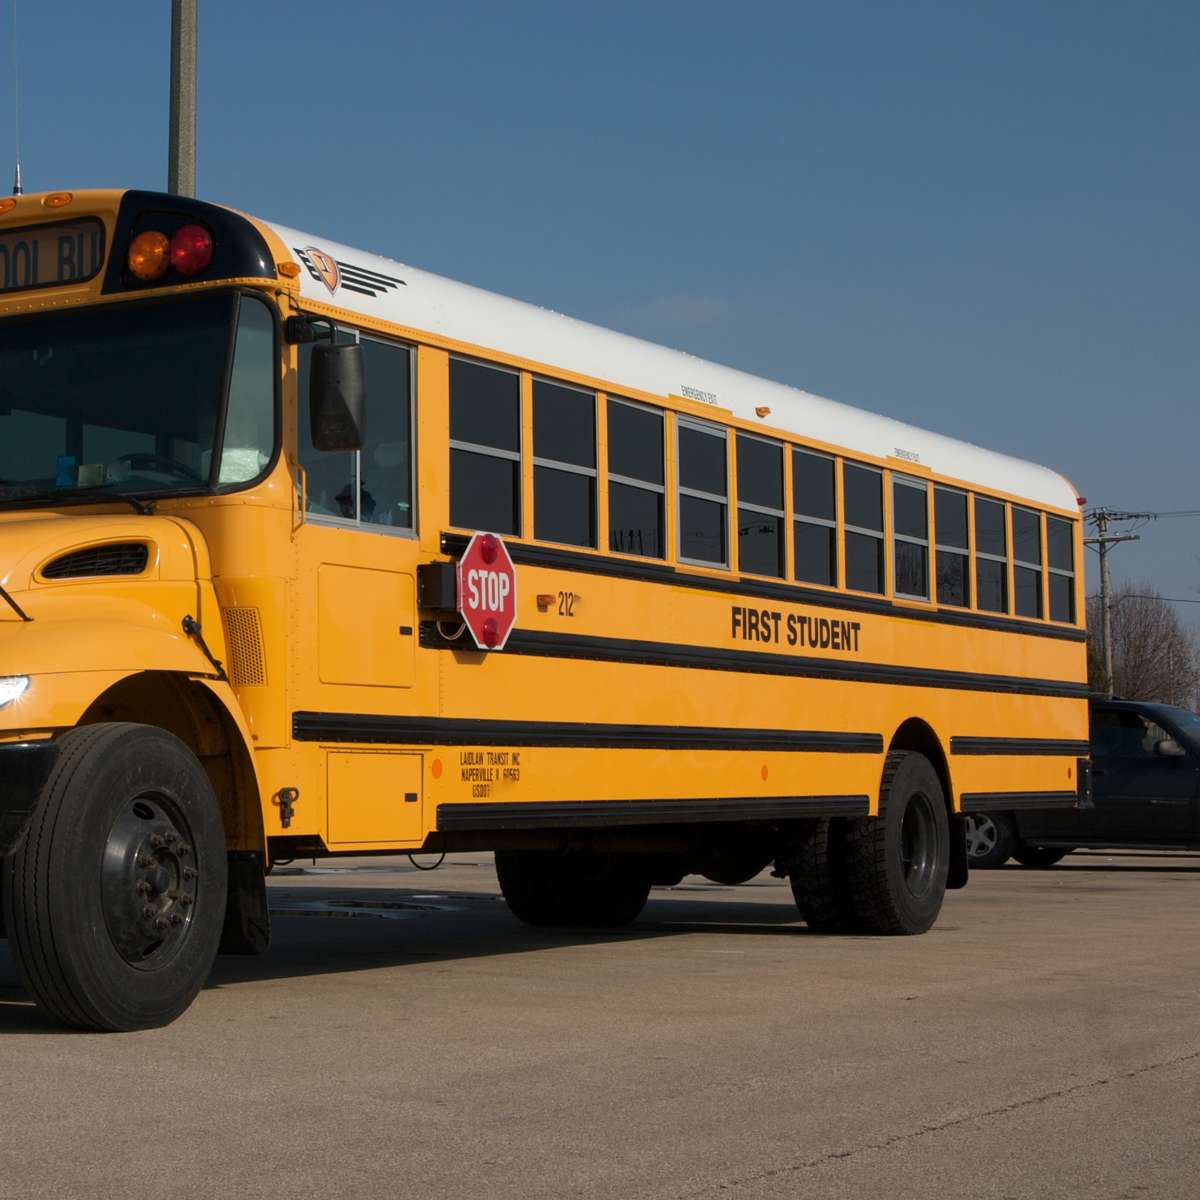 Училищен автобус онлайн пъзел